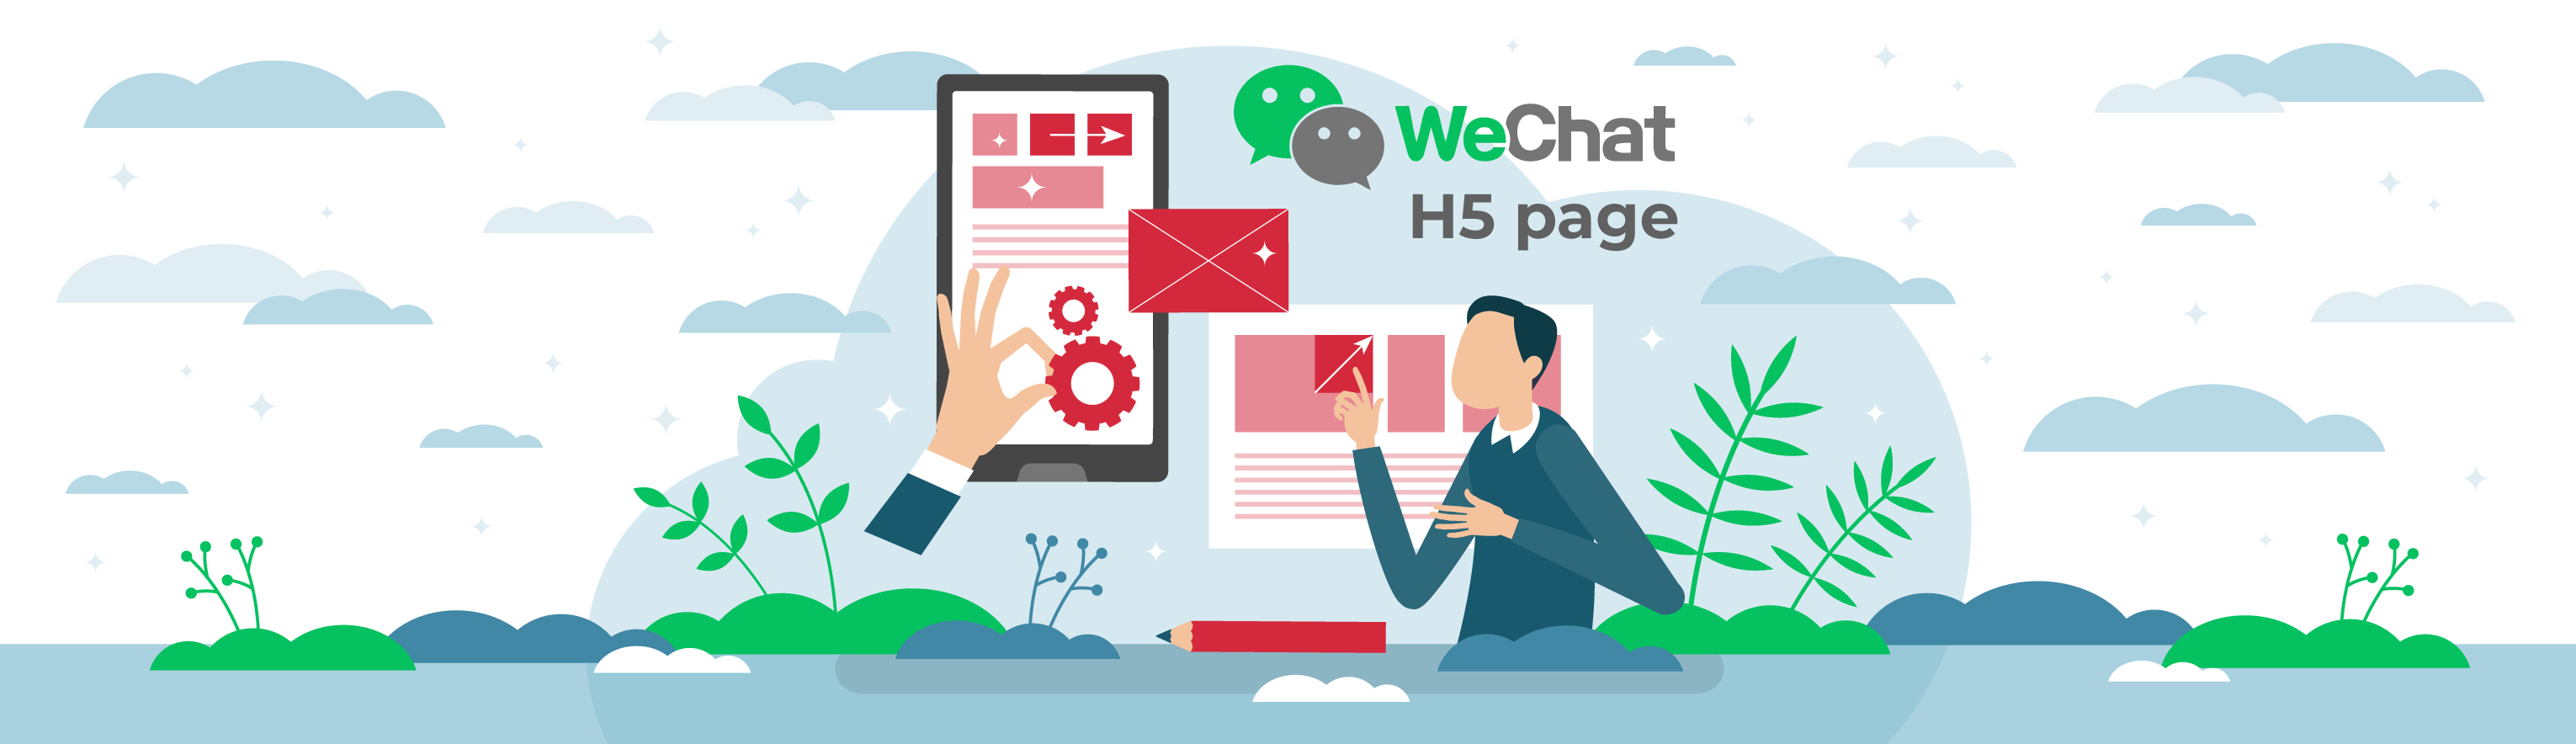 ปลดล็อกการใช้งาน WeChat H5 เครื่องมือการตลาดที่เป็นเอกลักษณ์สำหรับแบรนด์